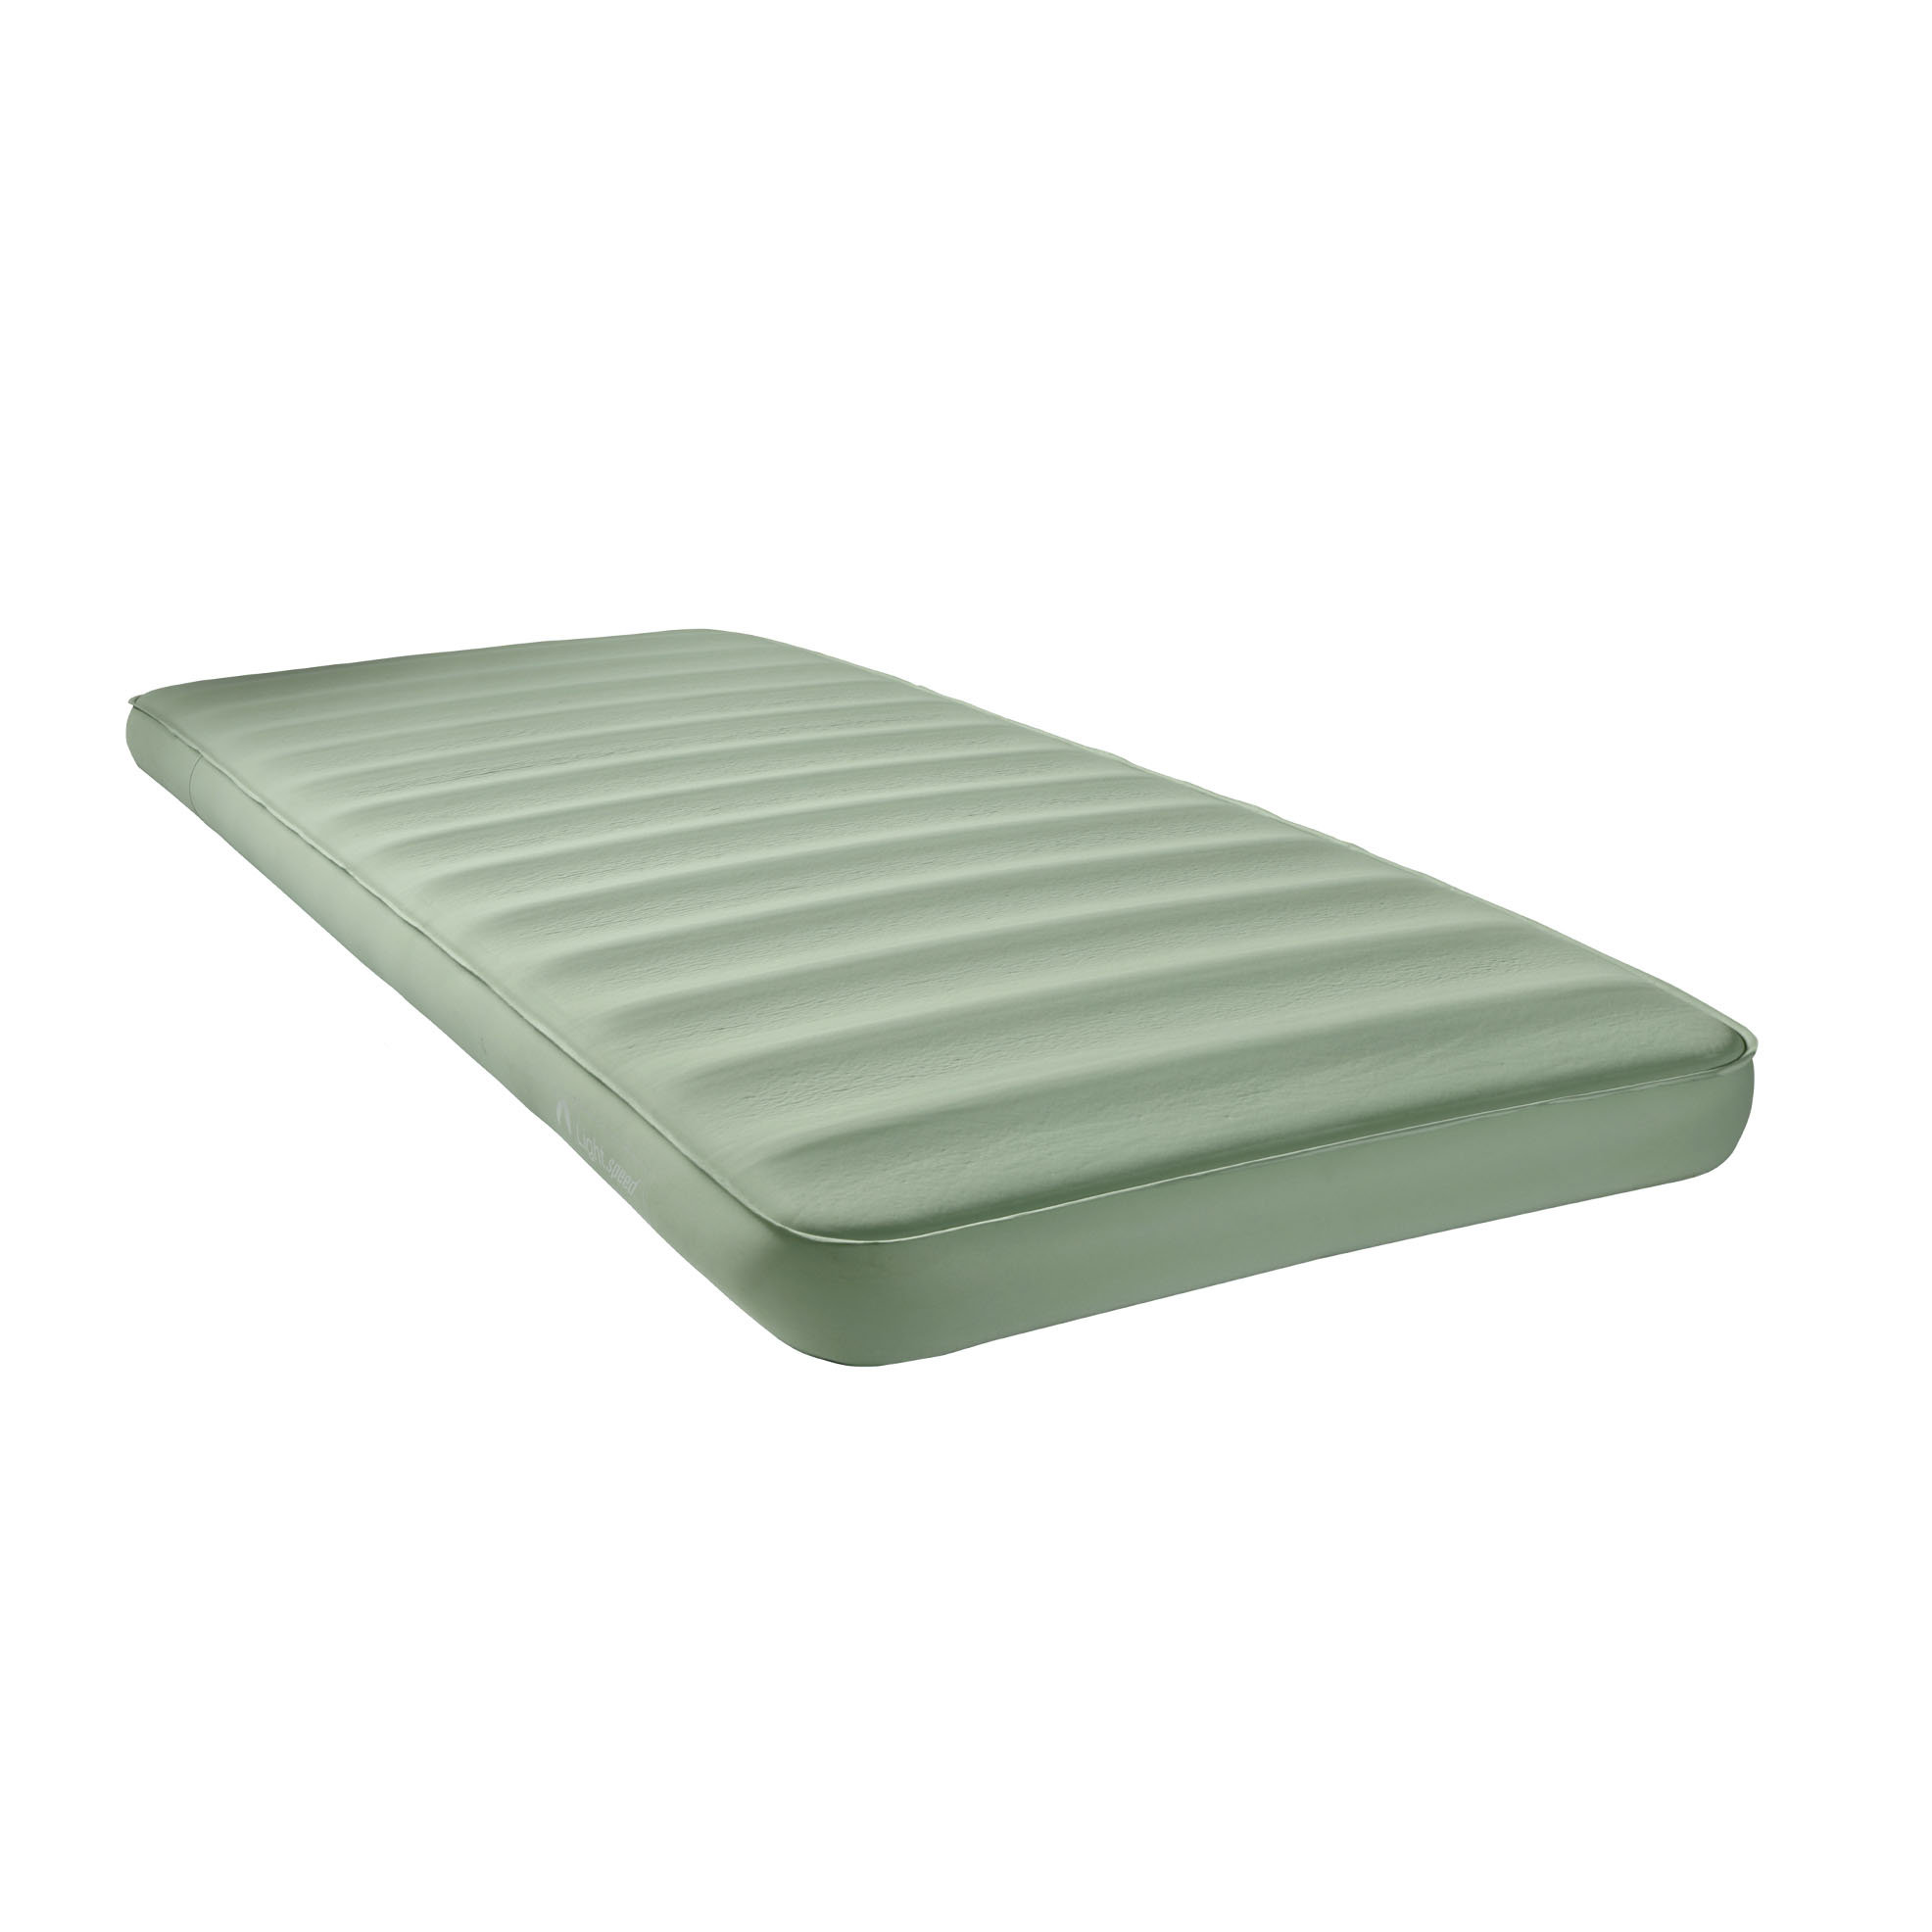 https://assets.wfcdn.com/im/69164451/compr-r85/2514/251424061/ecr4kids-lightspeed-outdoors-eco-3d-deluxe-flexform-sleep-pad-sleeping-mat.jpg